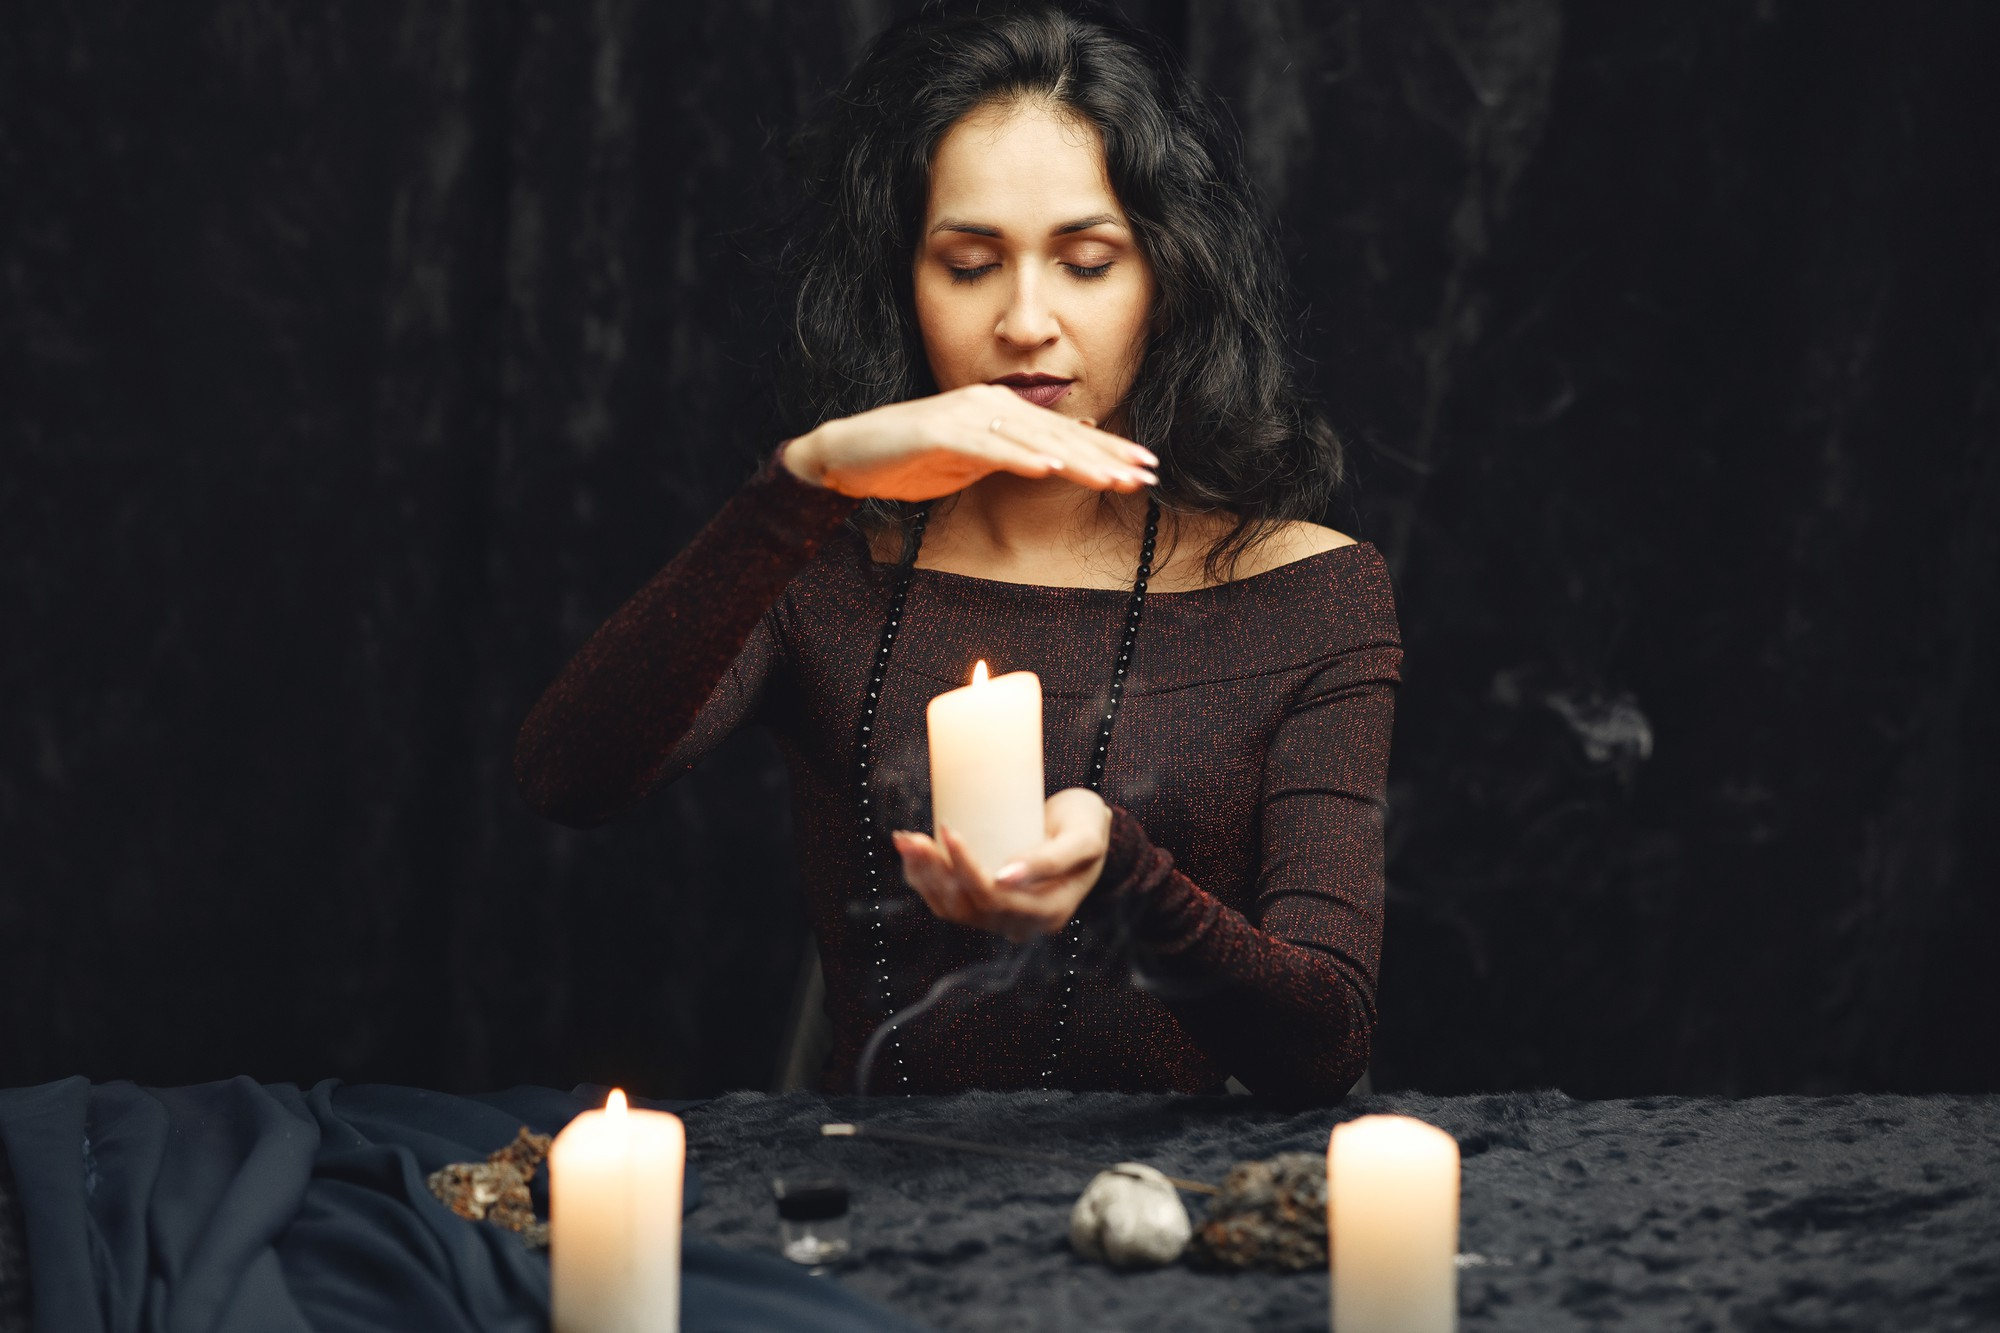 Самый распространённый обряд в ведьмино новолуние — гадать на любовь с помощью зеркал. Таким способом можно увидеть судьбу. Фото © Freepik